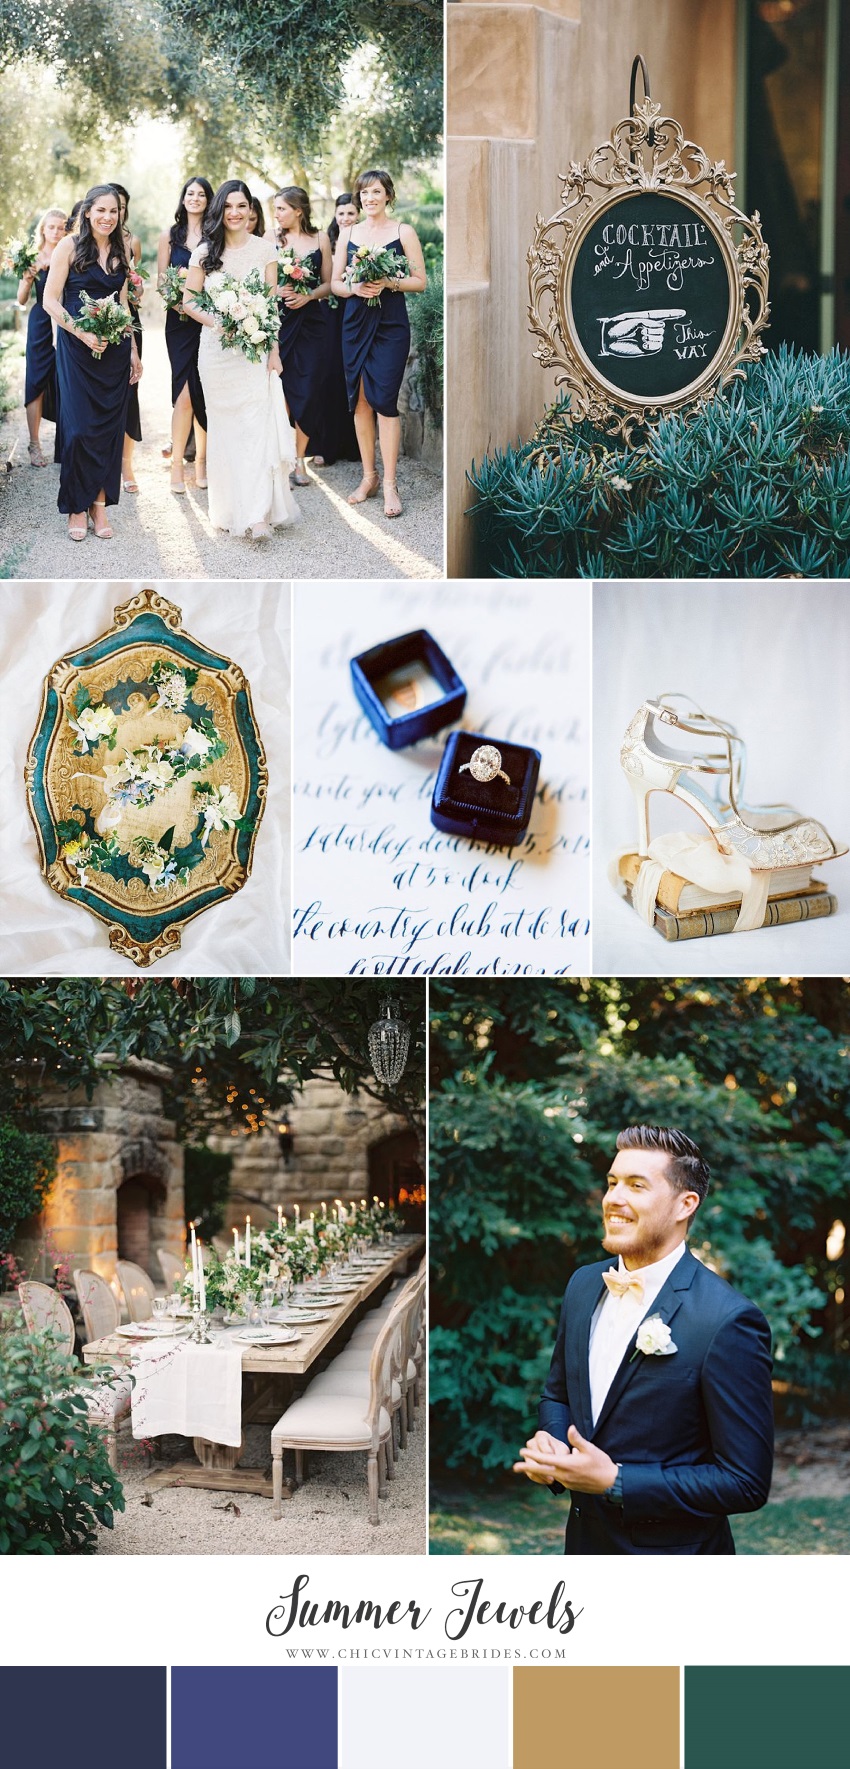 Summer Jewels - Garden Wedding Inspiration in Midnight Blue & Emerald